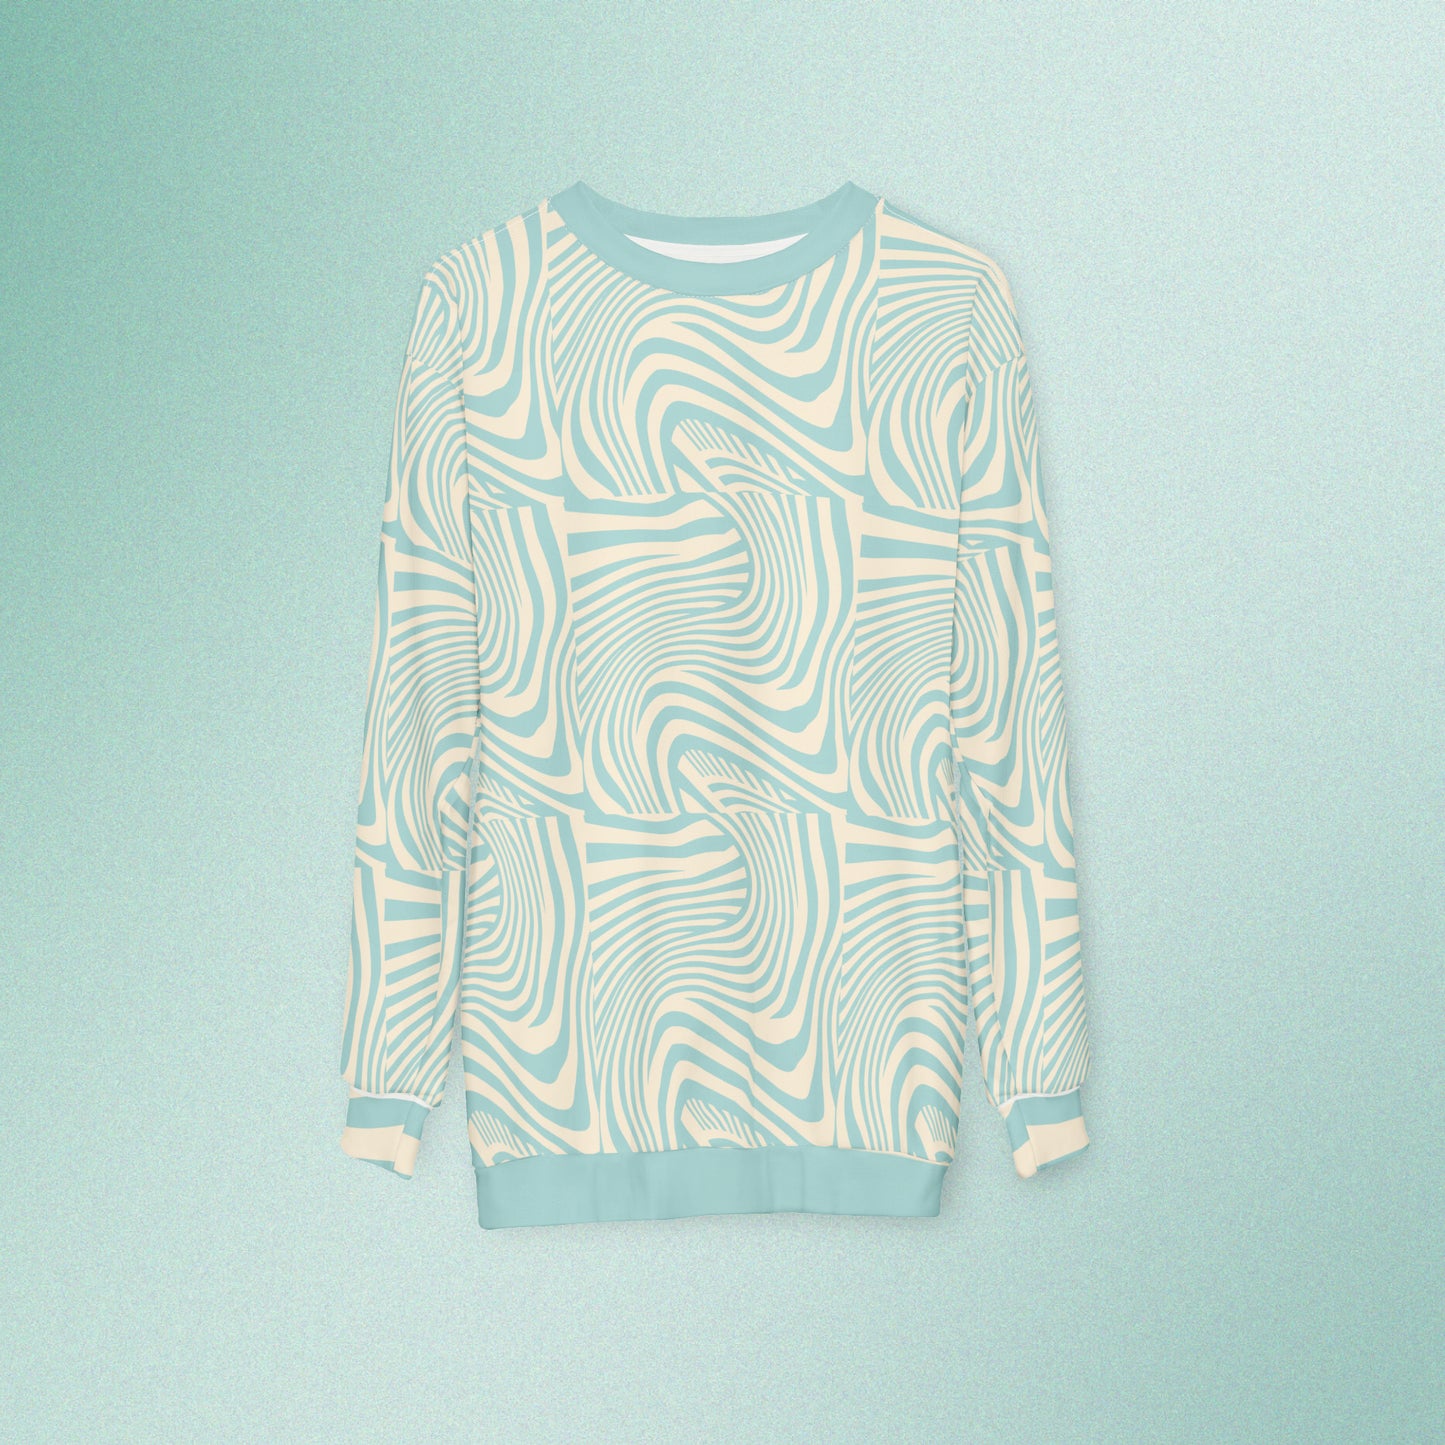 Tan & Blue Abstract: Sweatshirt